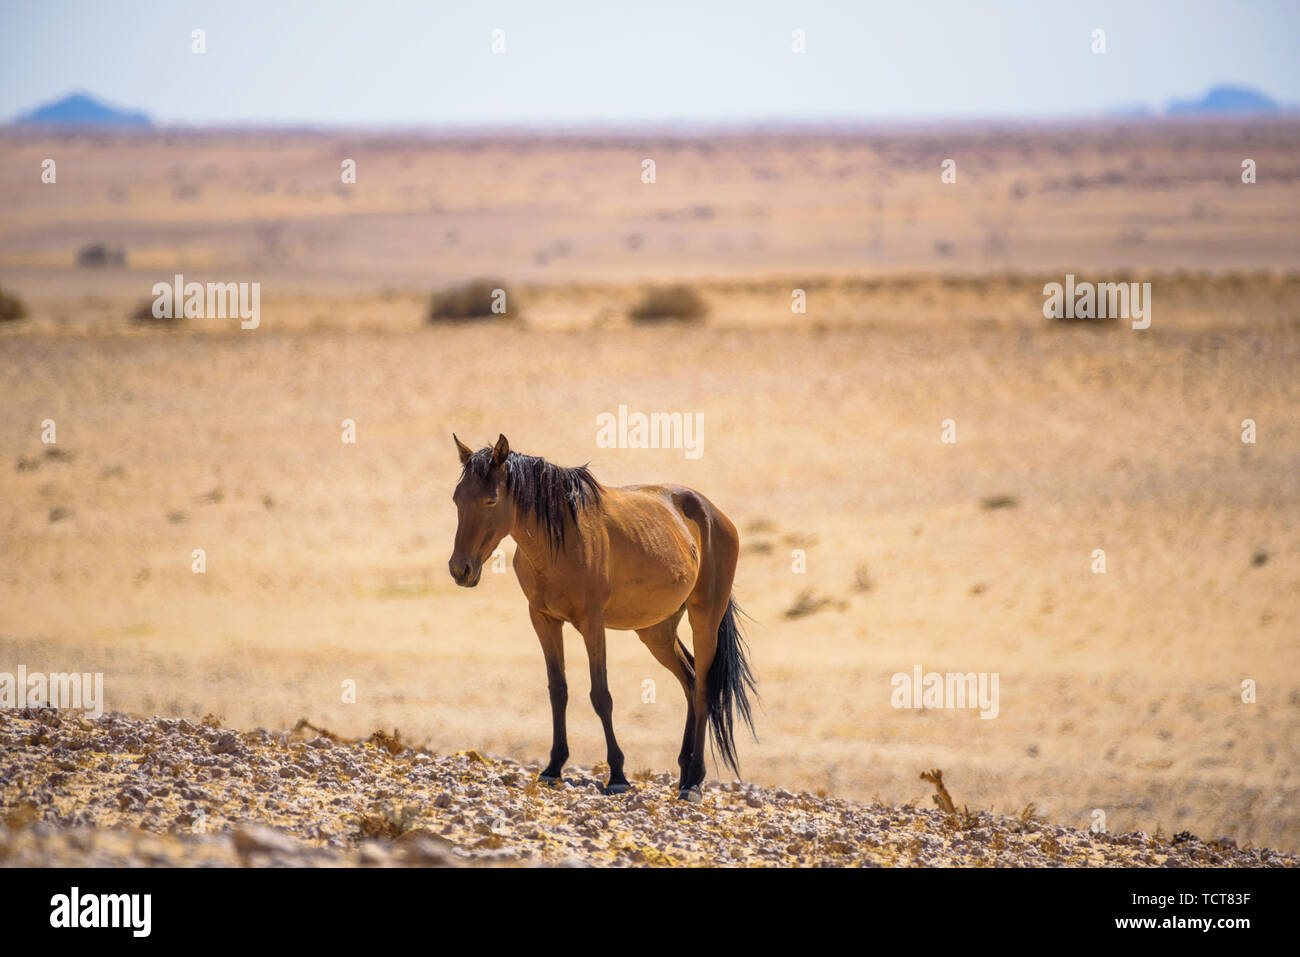 Wild horse of the Namib desert near Garub, south Namibia Stock Photo